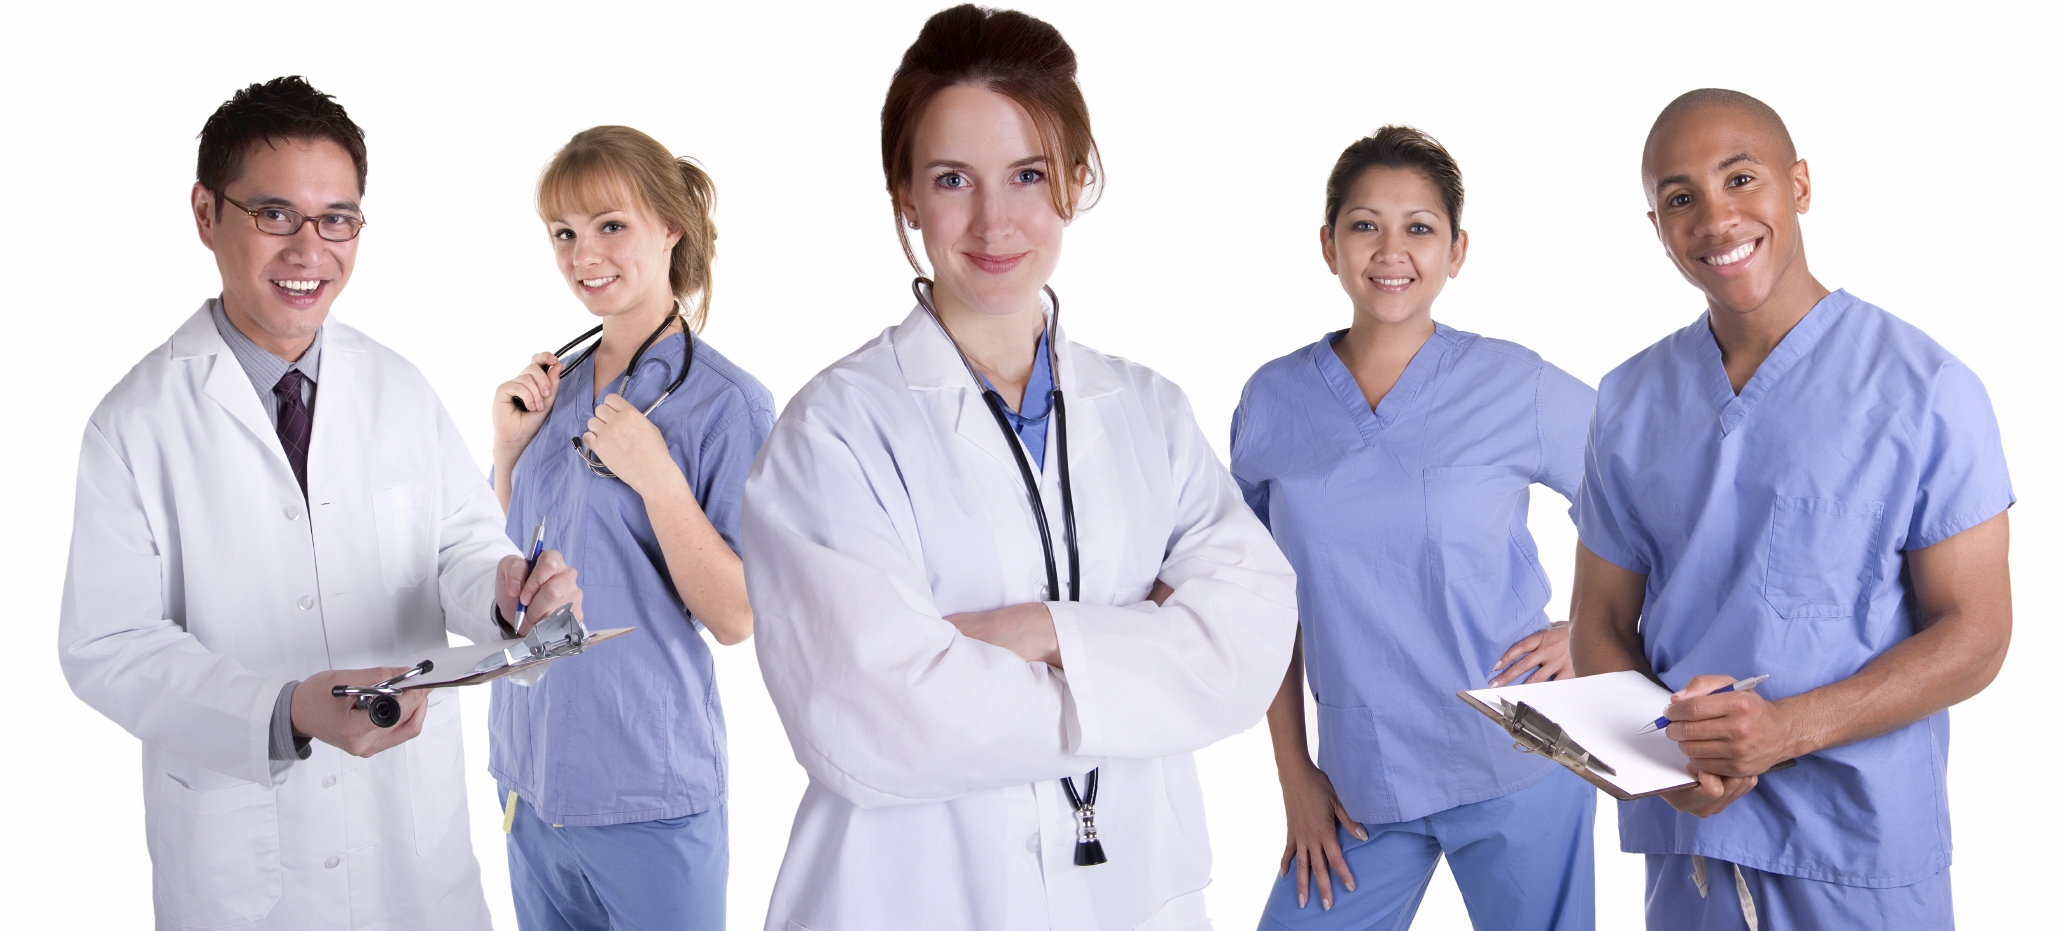 medical-assistants-resume-sample